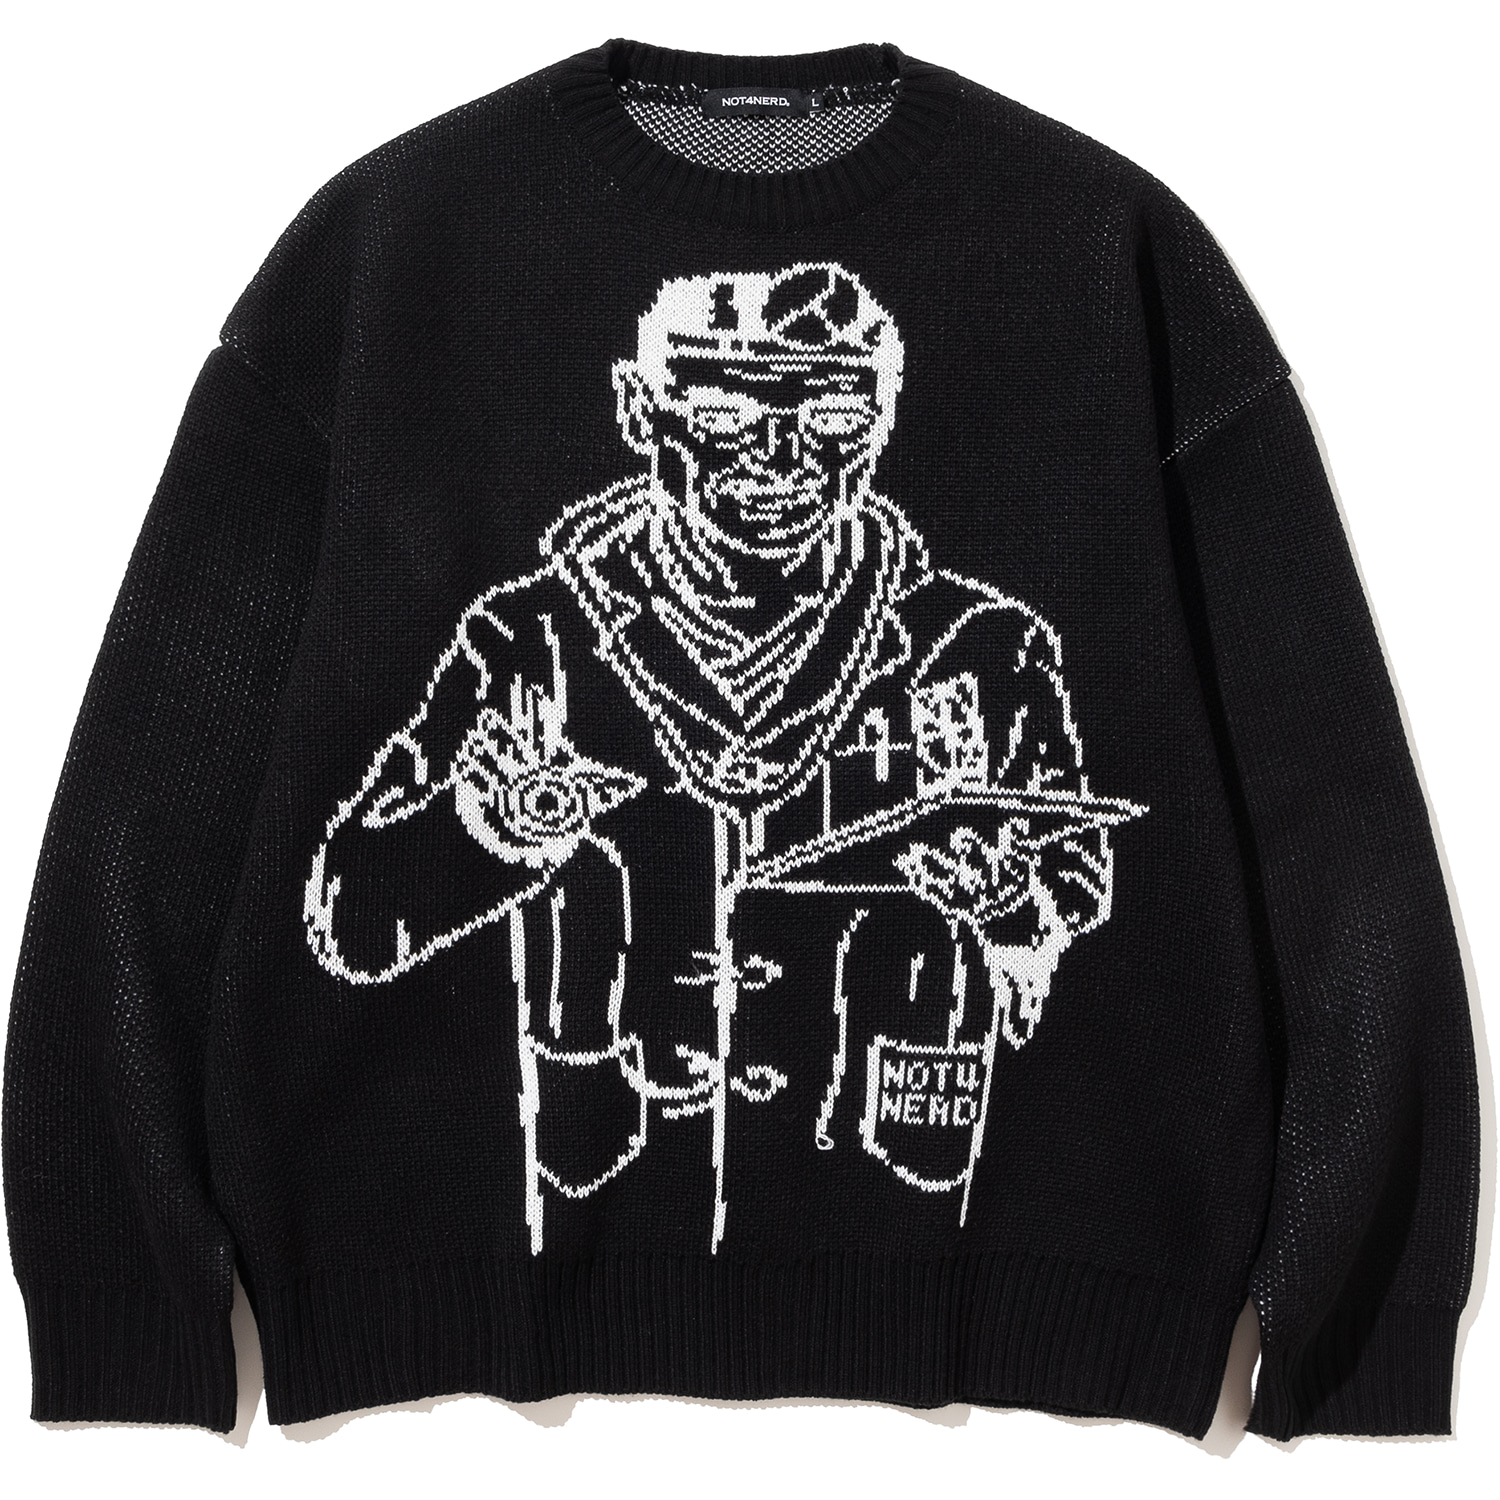 Doctor Knit Sweater - Black,NOT4NERD